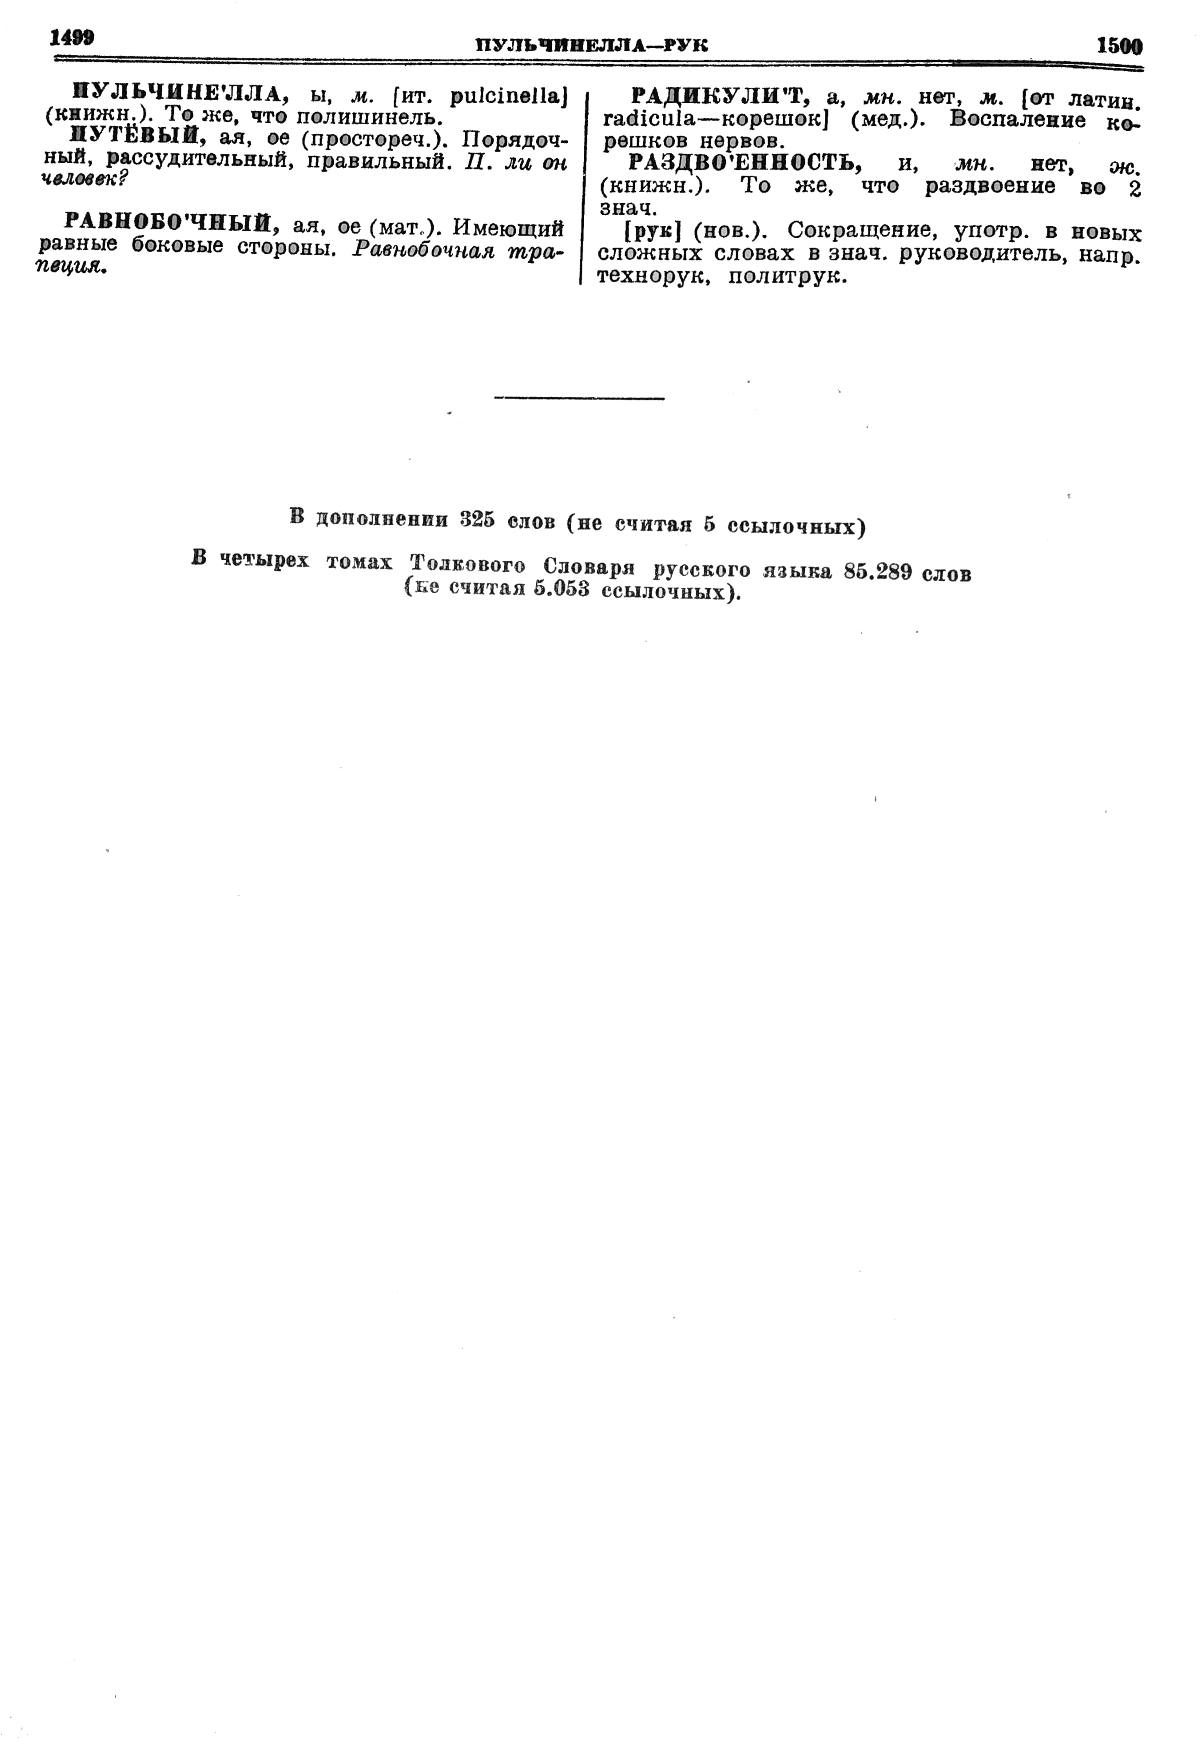 Фотокопия pdf / скан страницы 750 толкового словаря Ушакова (том 1)